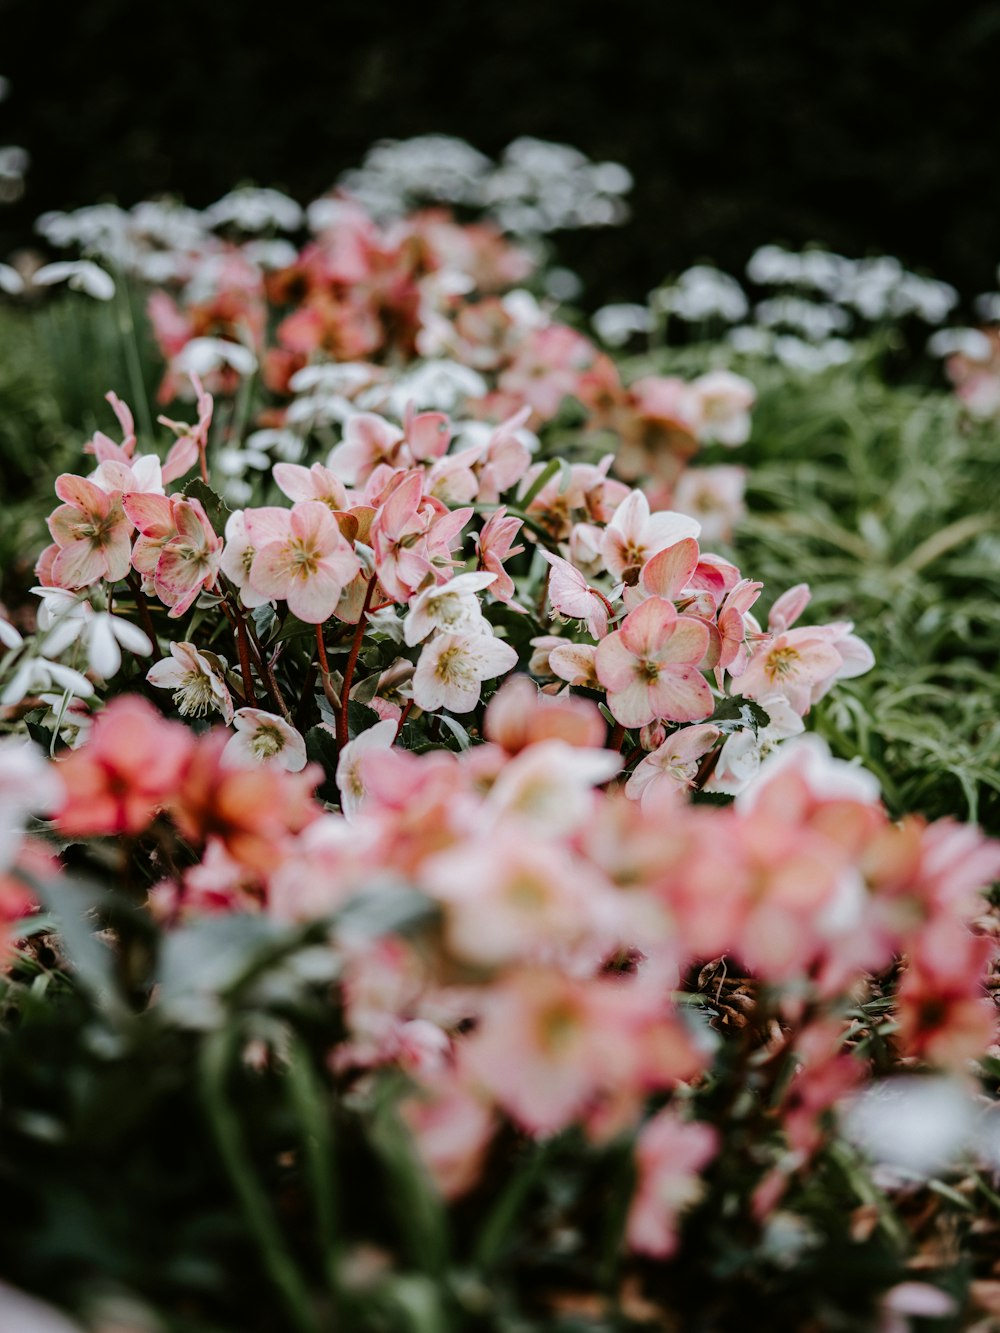 흰색과 분홍색 꽃잎이 있는 꽃의 선택적 초점 사진